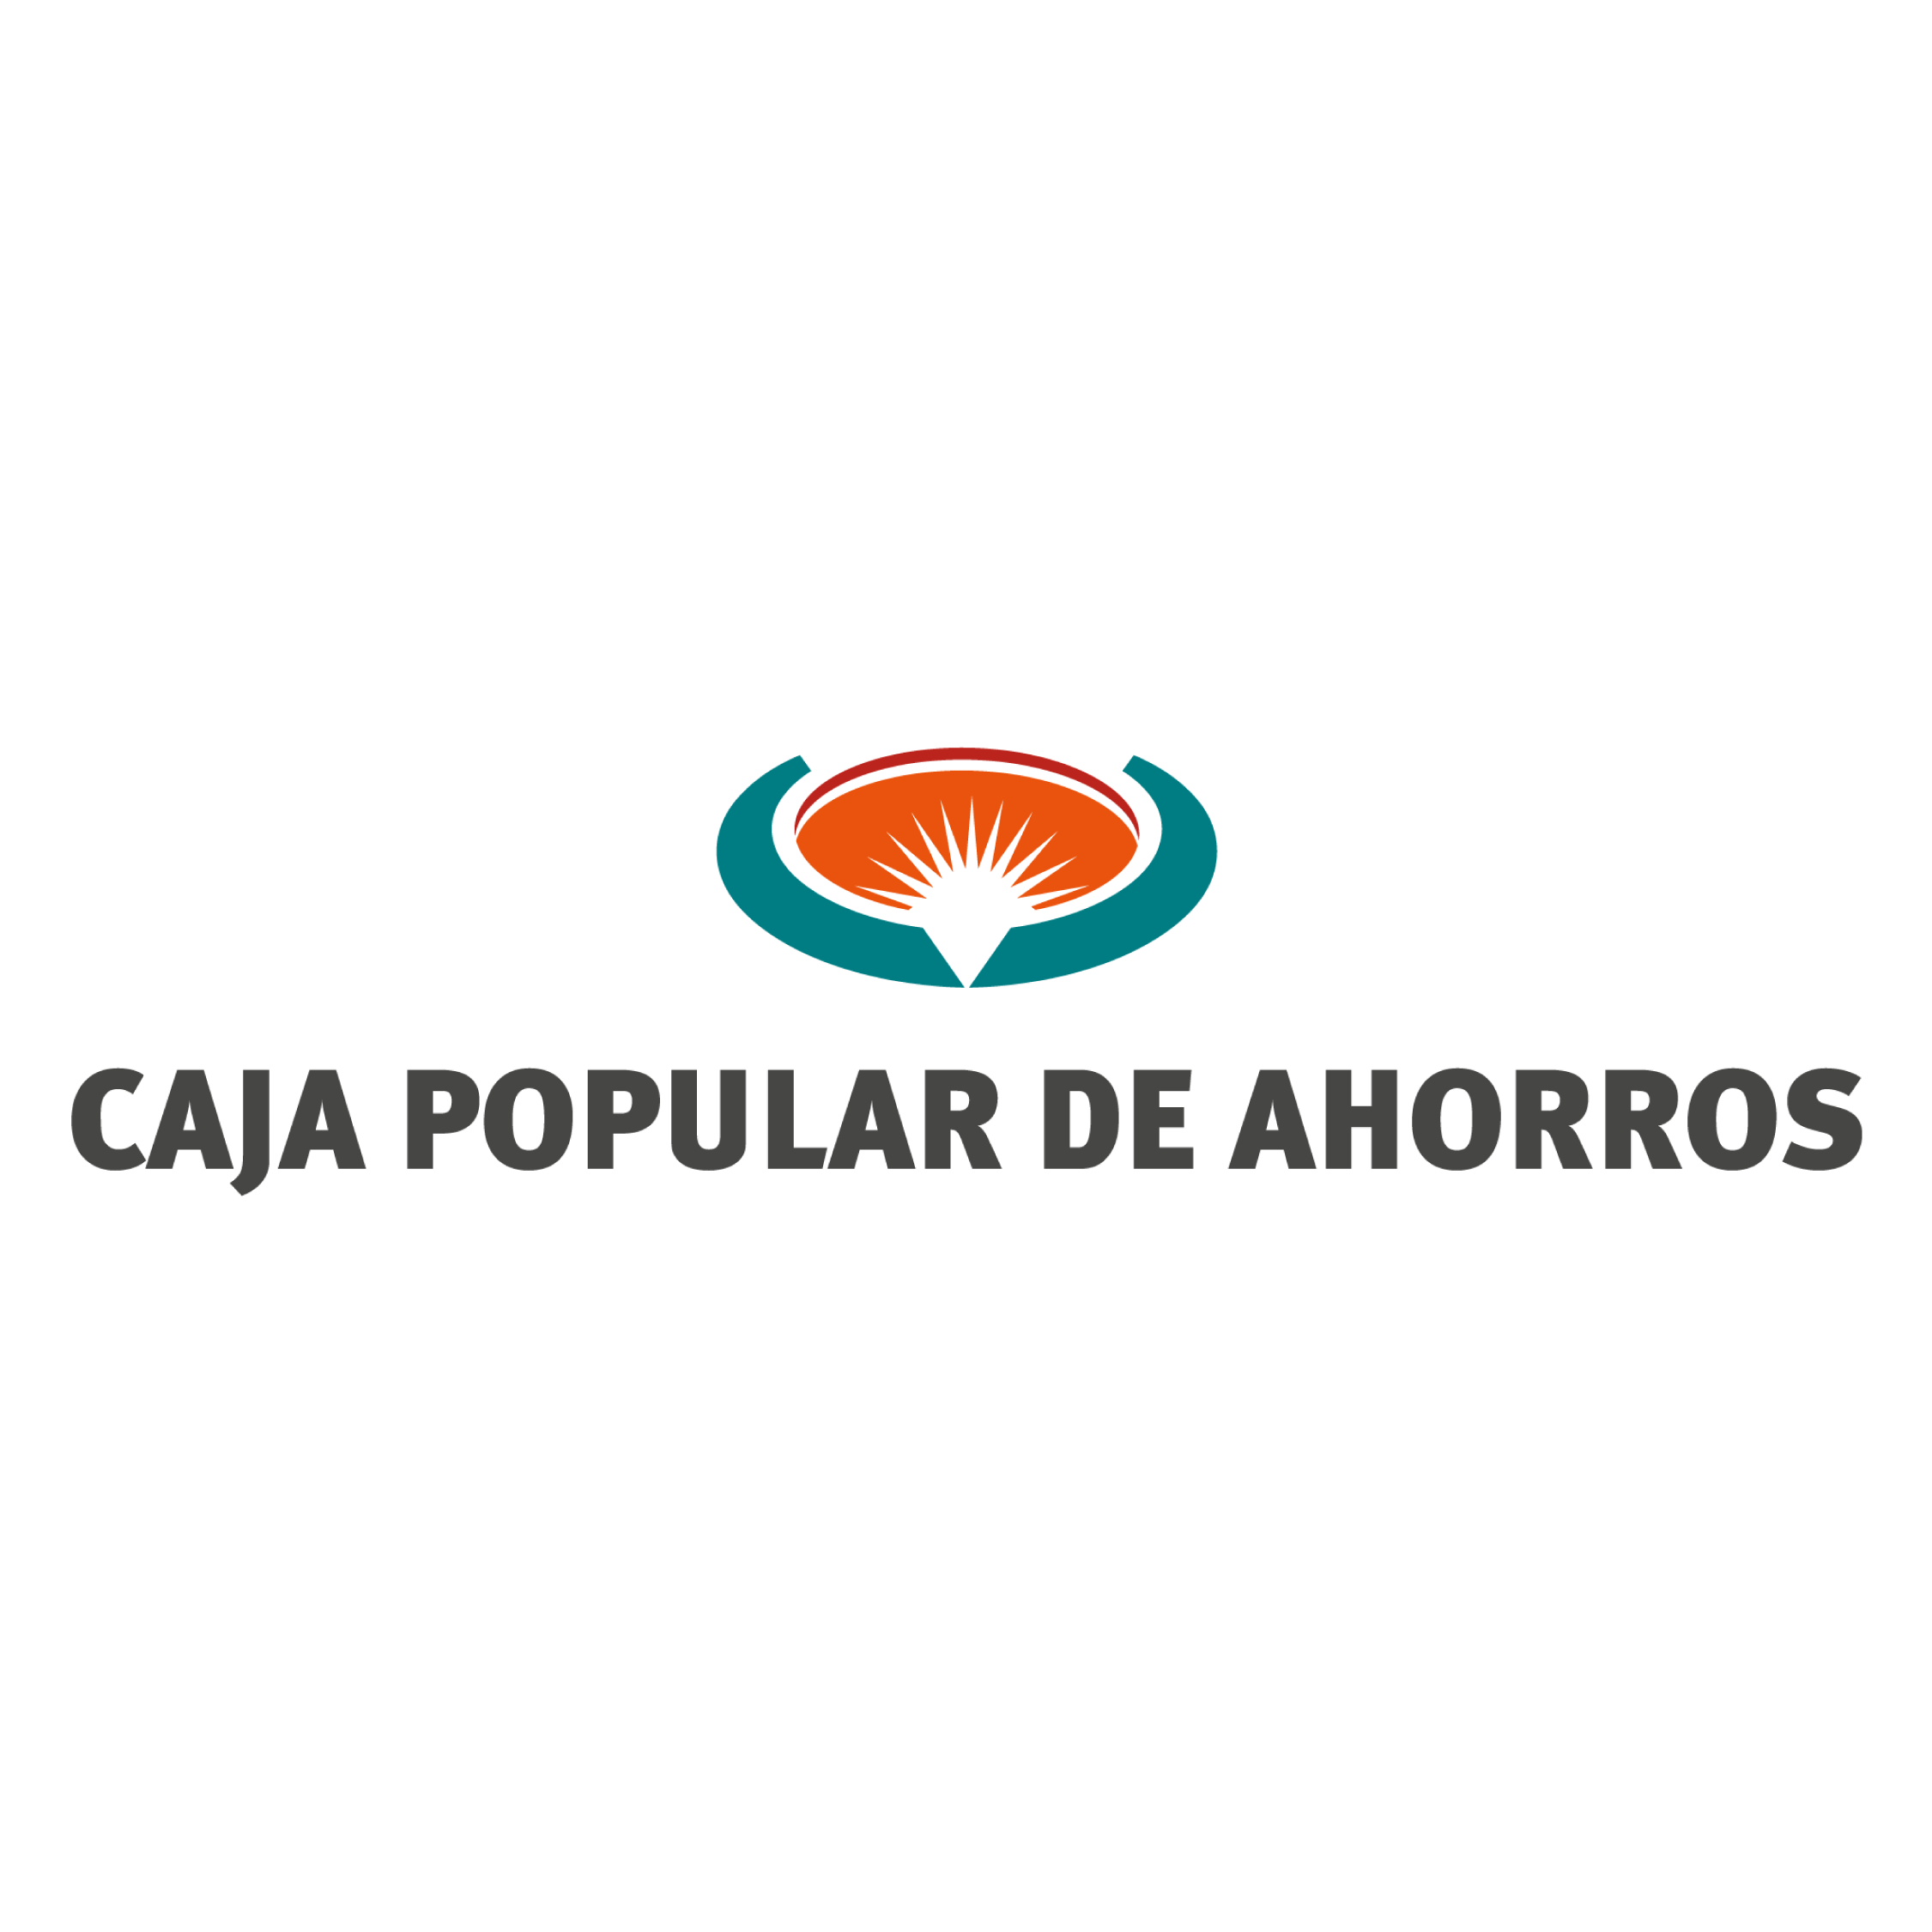 CAJA POPULAR DE AHORRO